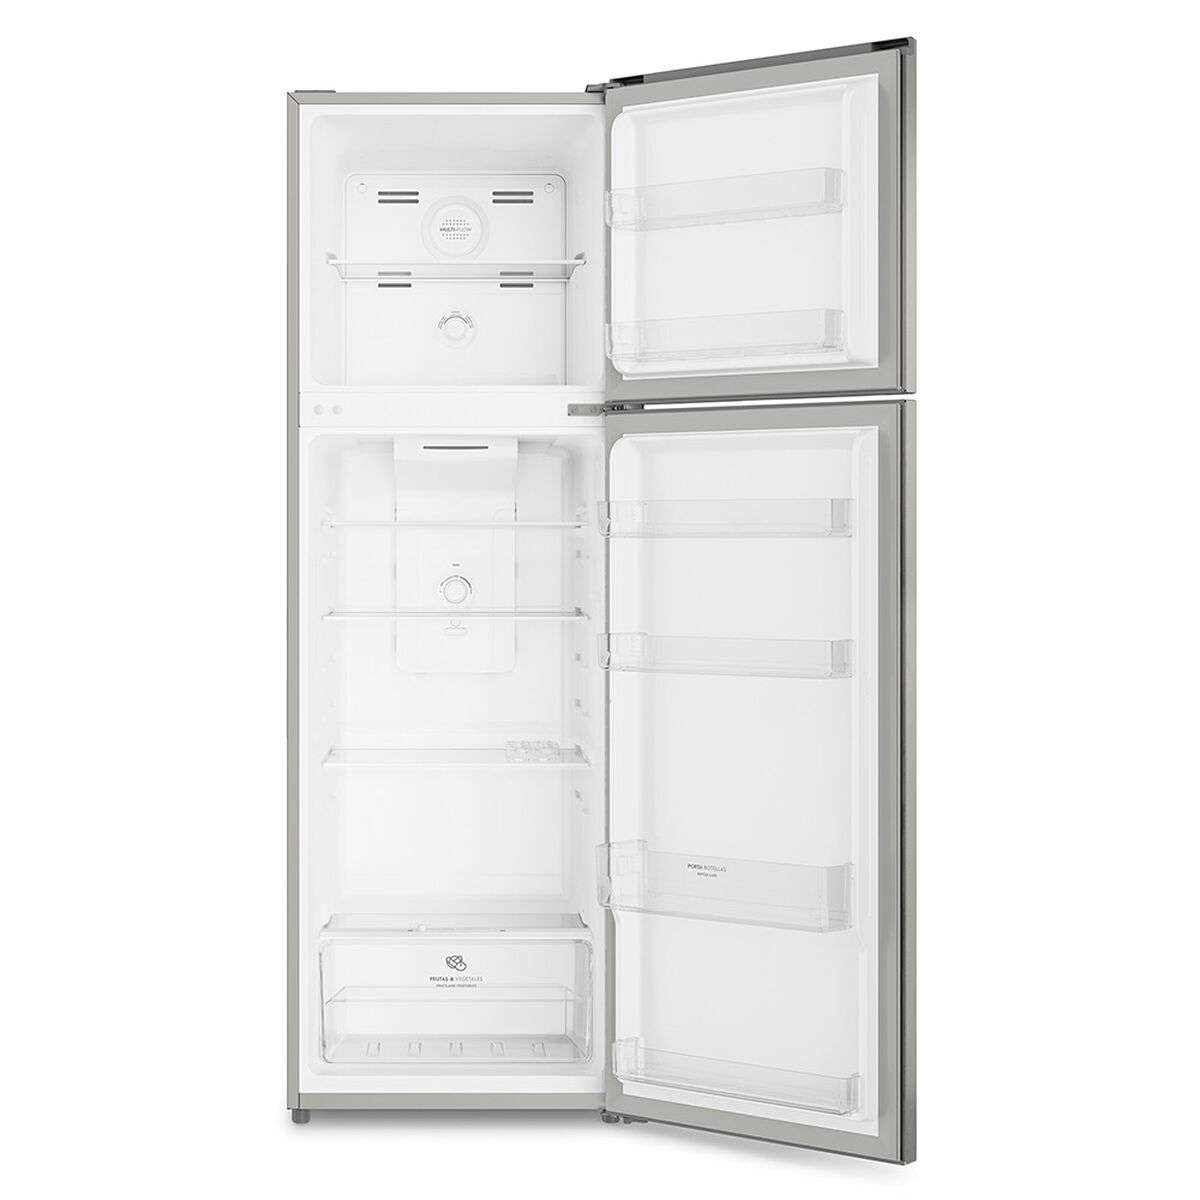 Refrigerador No Frost Mademsa Altus 1250 251 lts